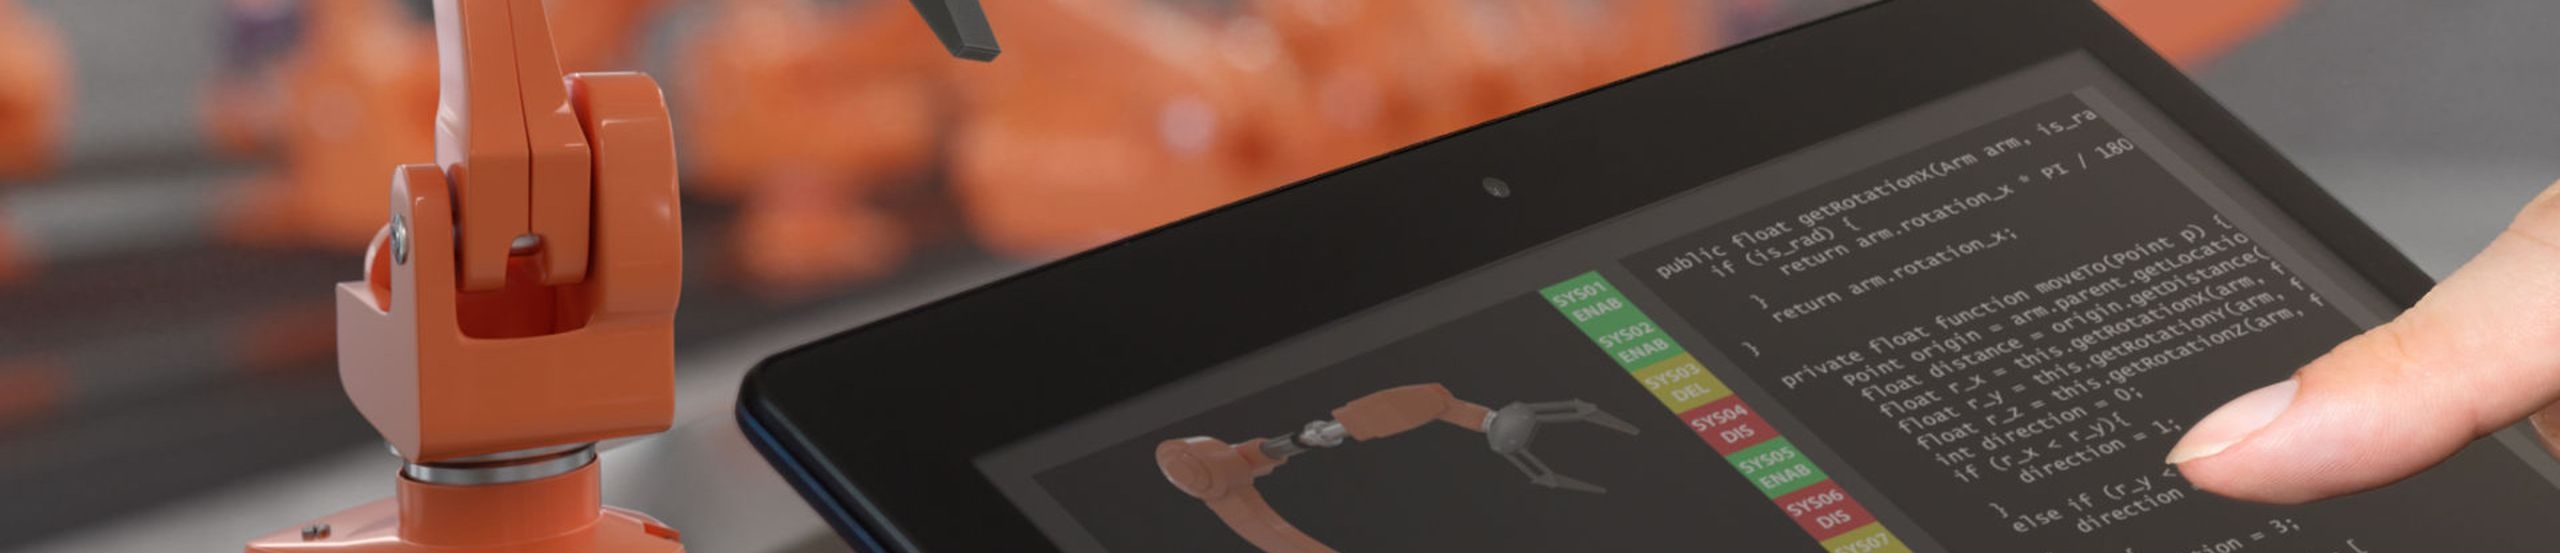 Ein Finger zeigt auf ein Tablet mit dem Symbol eines Roboterarms. Daneben und im Hintergrund sind weitere Arme von Industrierobotern zu sehen